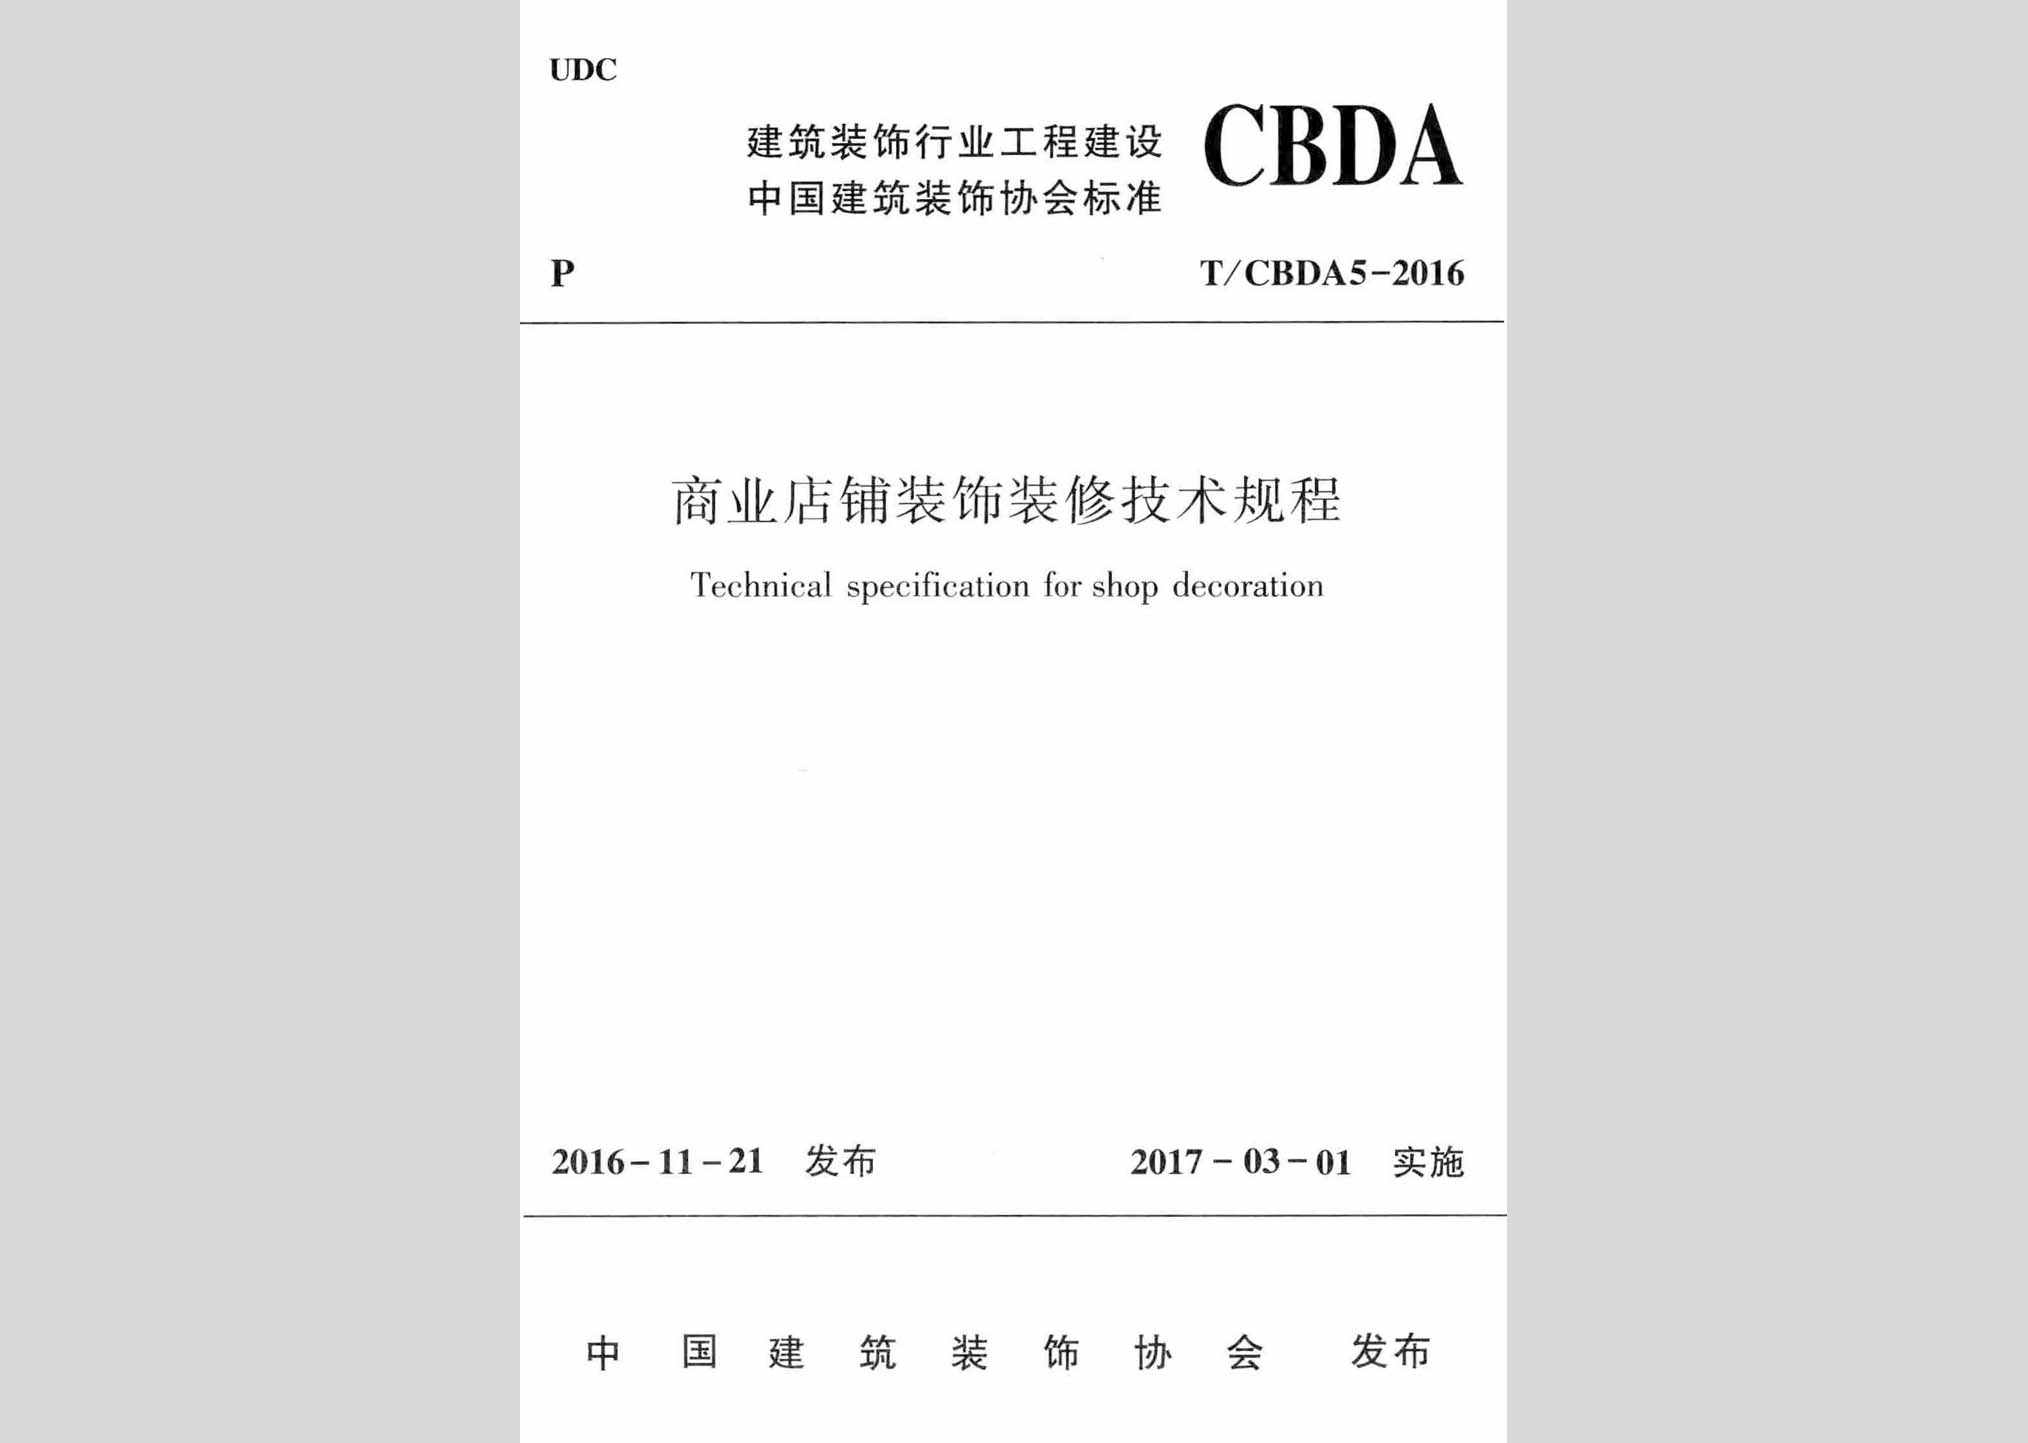 T/CBDA5-2016：商业店铺装饰装修技术规程